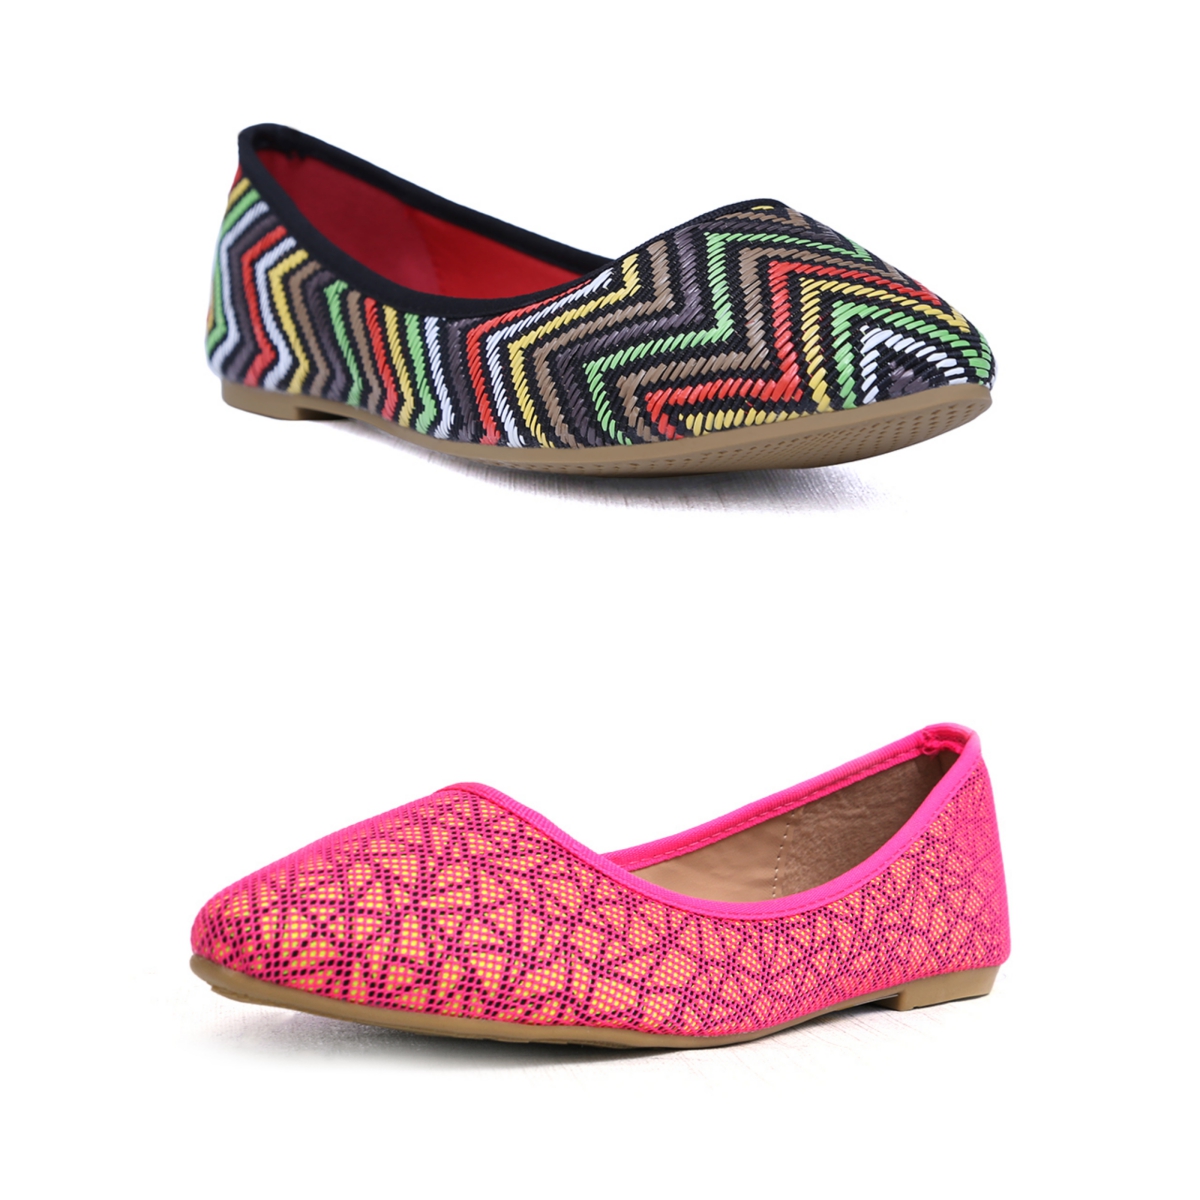 borjan-shoes-latest-fallwinter-footwear-designs-2016-17-for-women-9